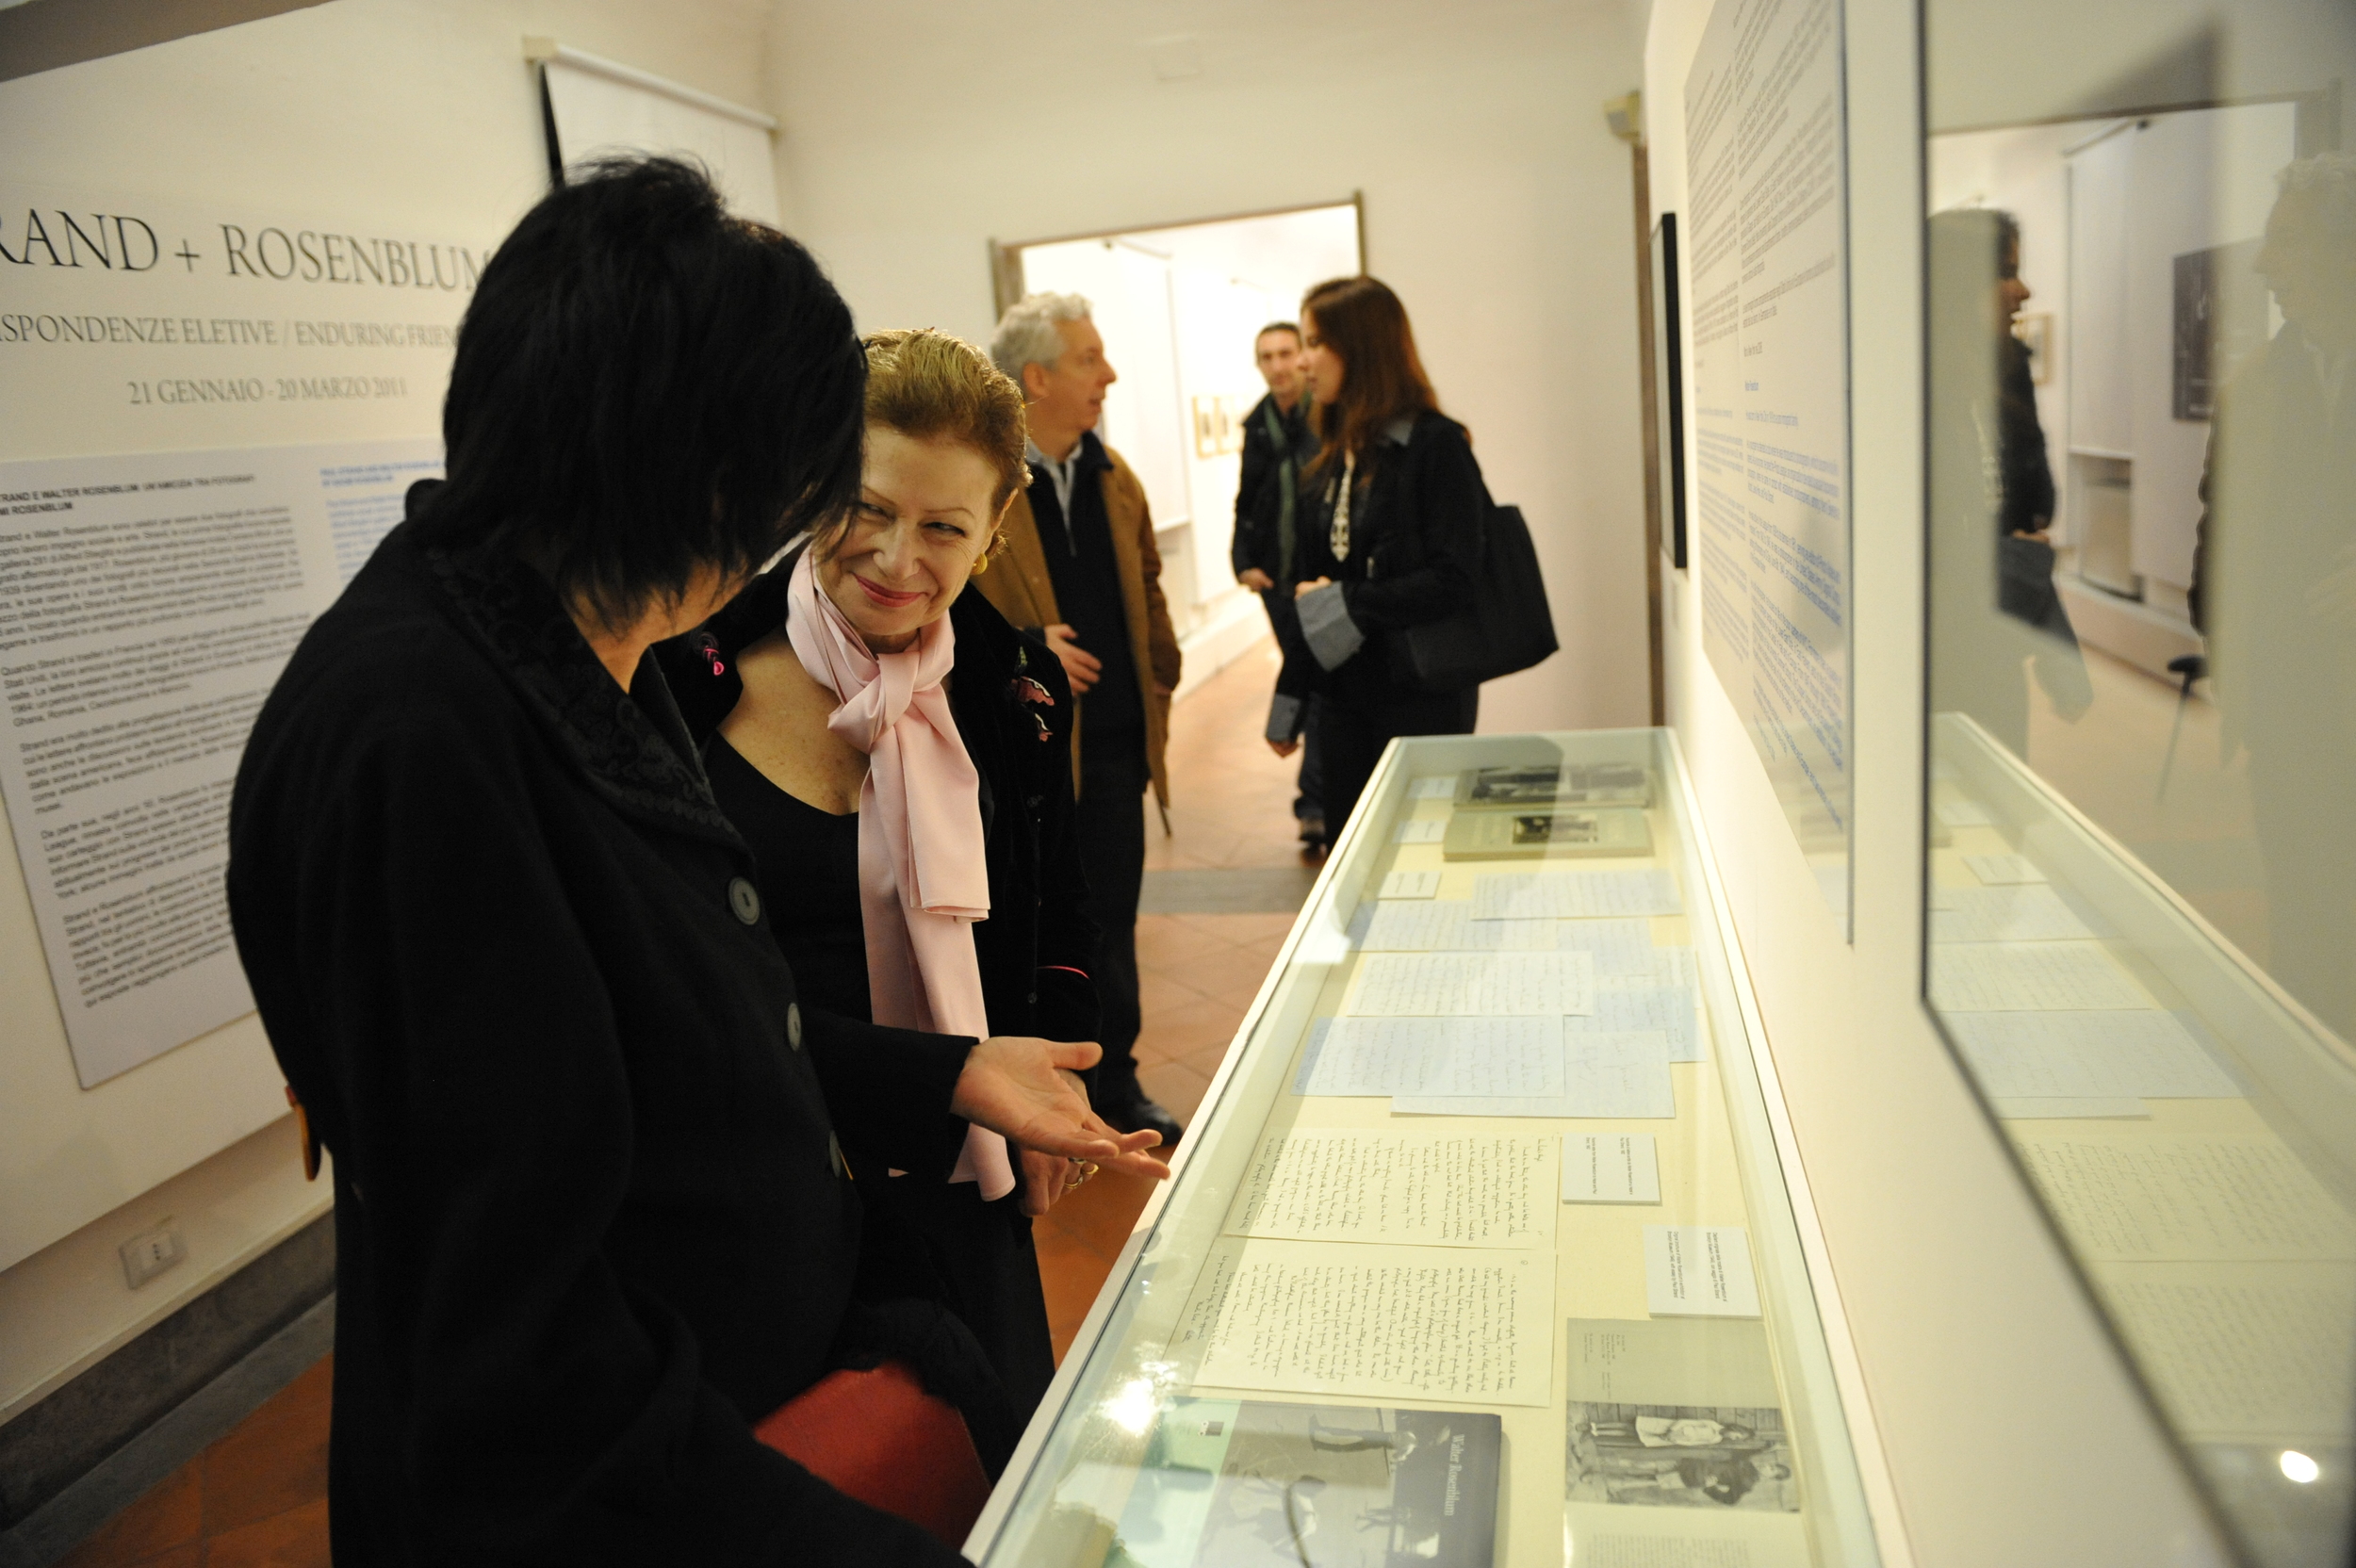 Manuela Fugenzi and Nina Rosenblum looking at sidebar